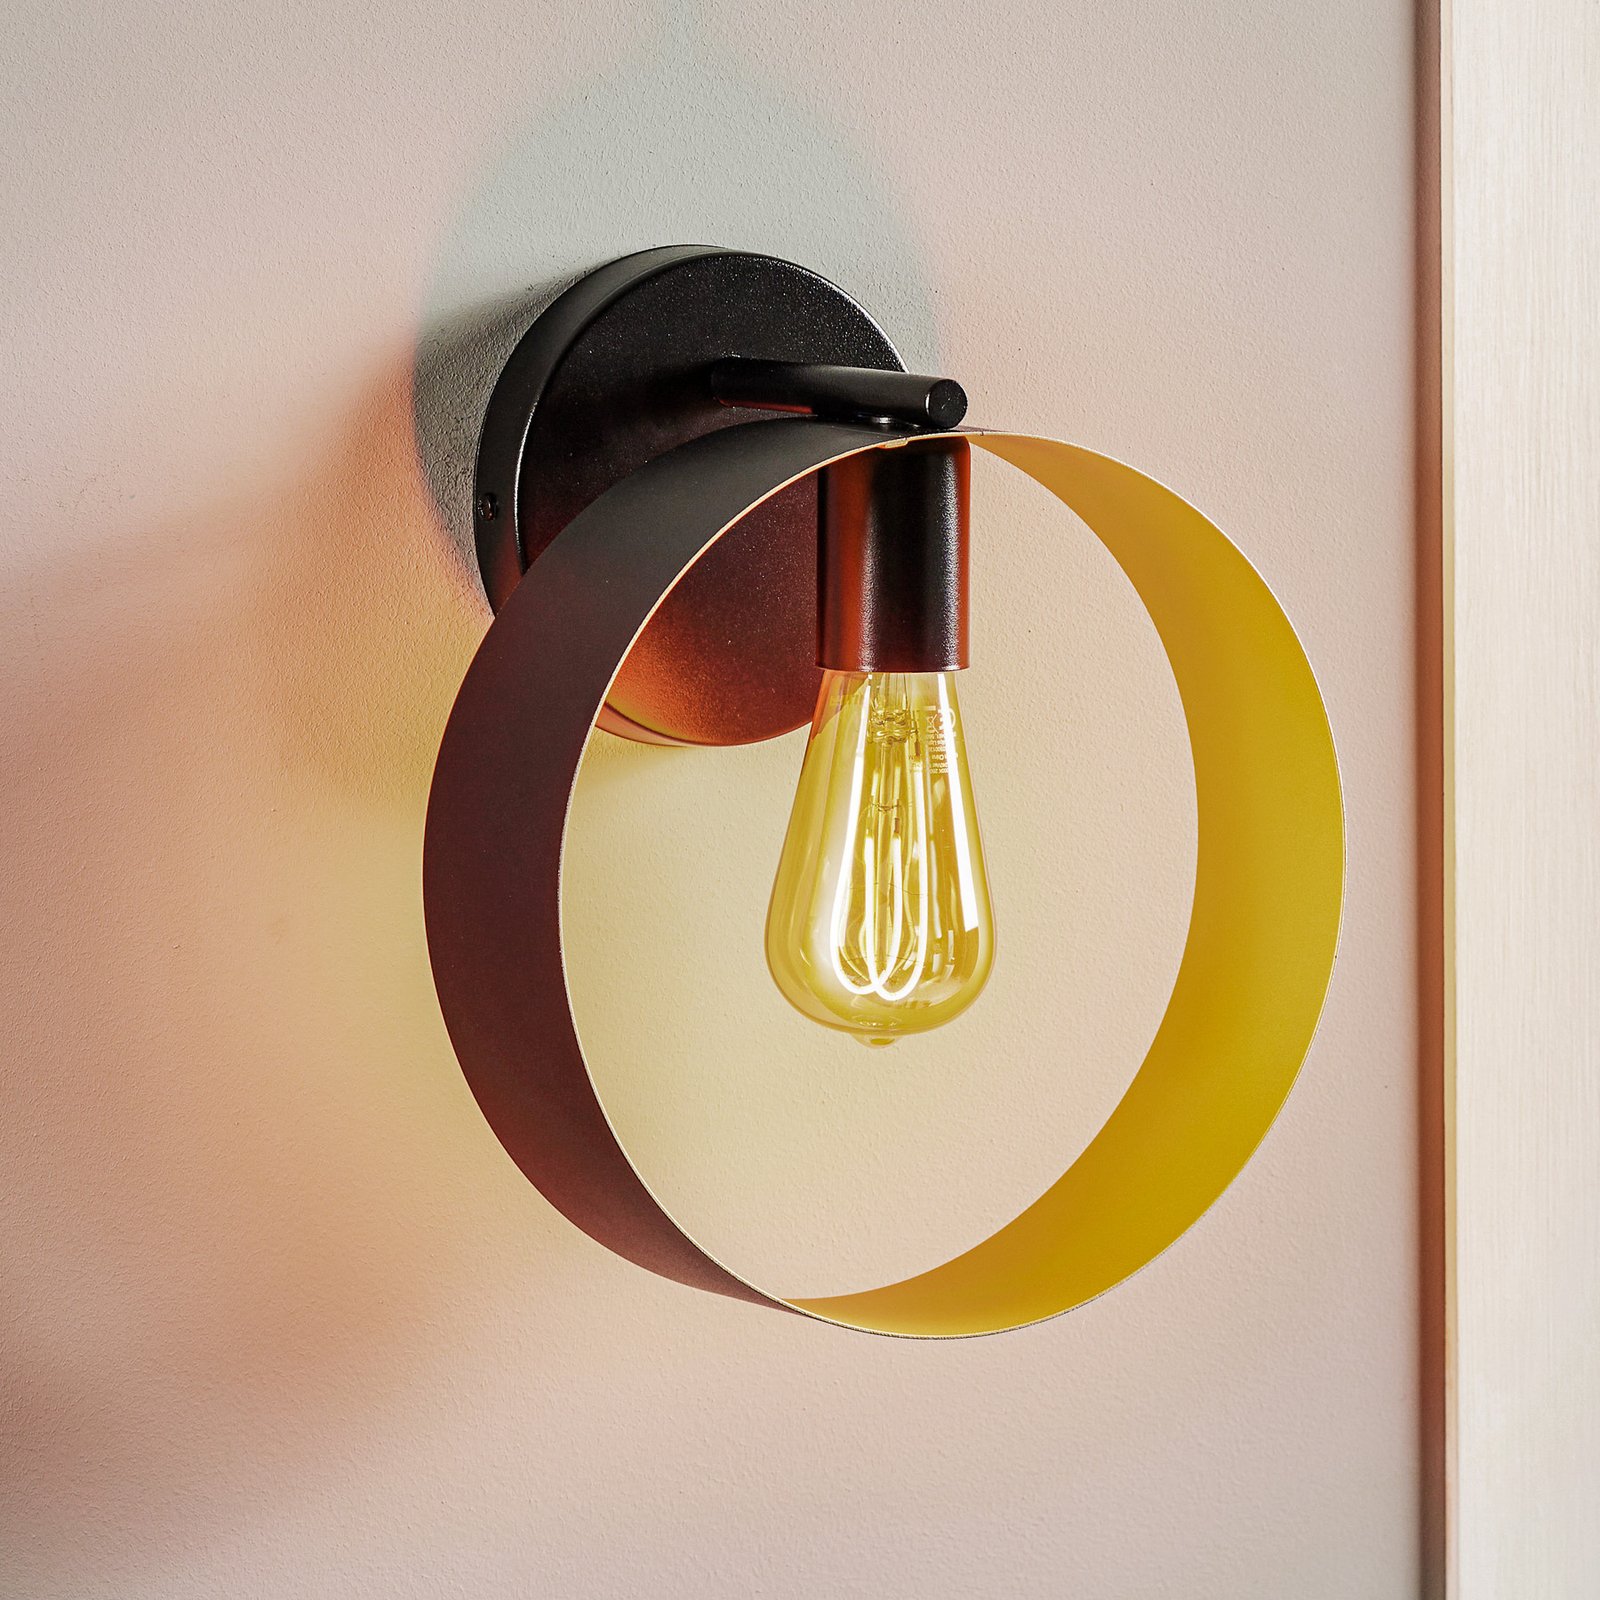 Hula zidna svjetiljka u dizajnu prstena, crna/zlatna